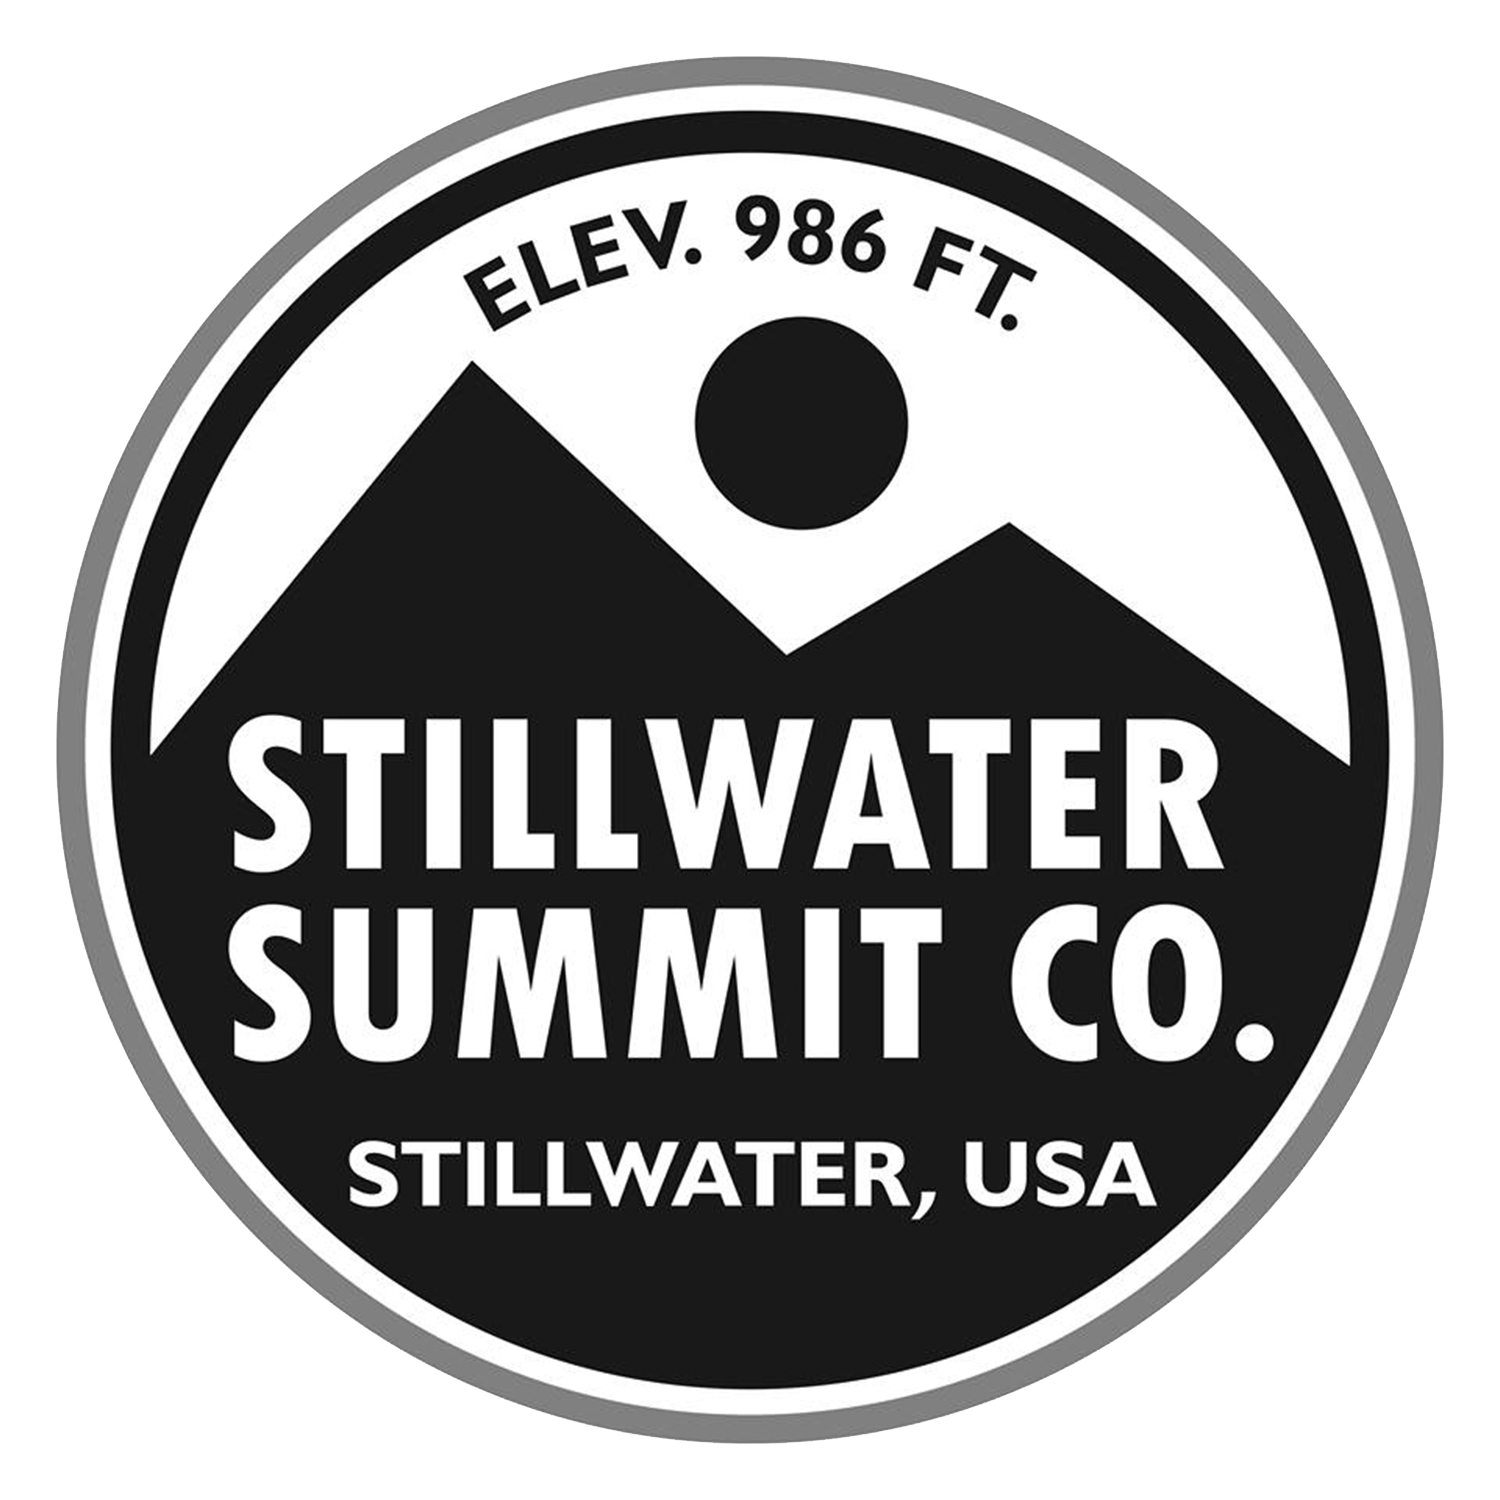 Stillwater Summit Co.